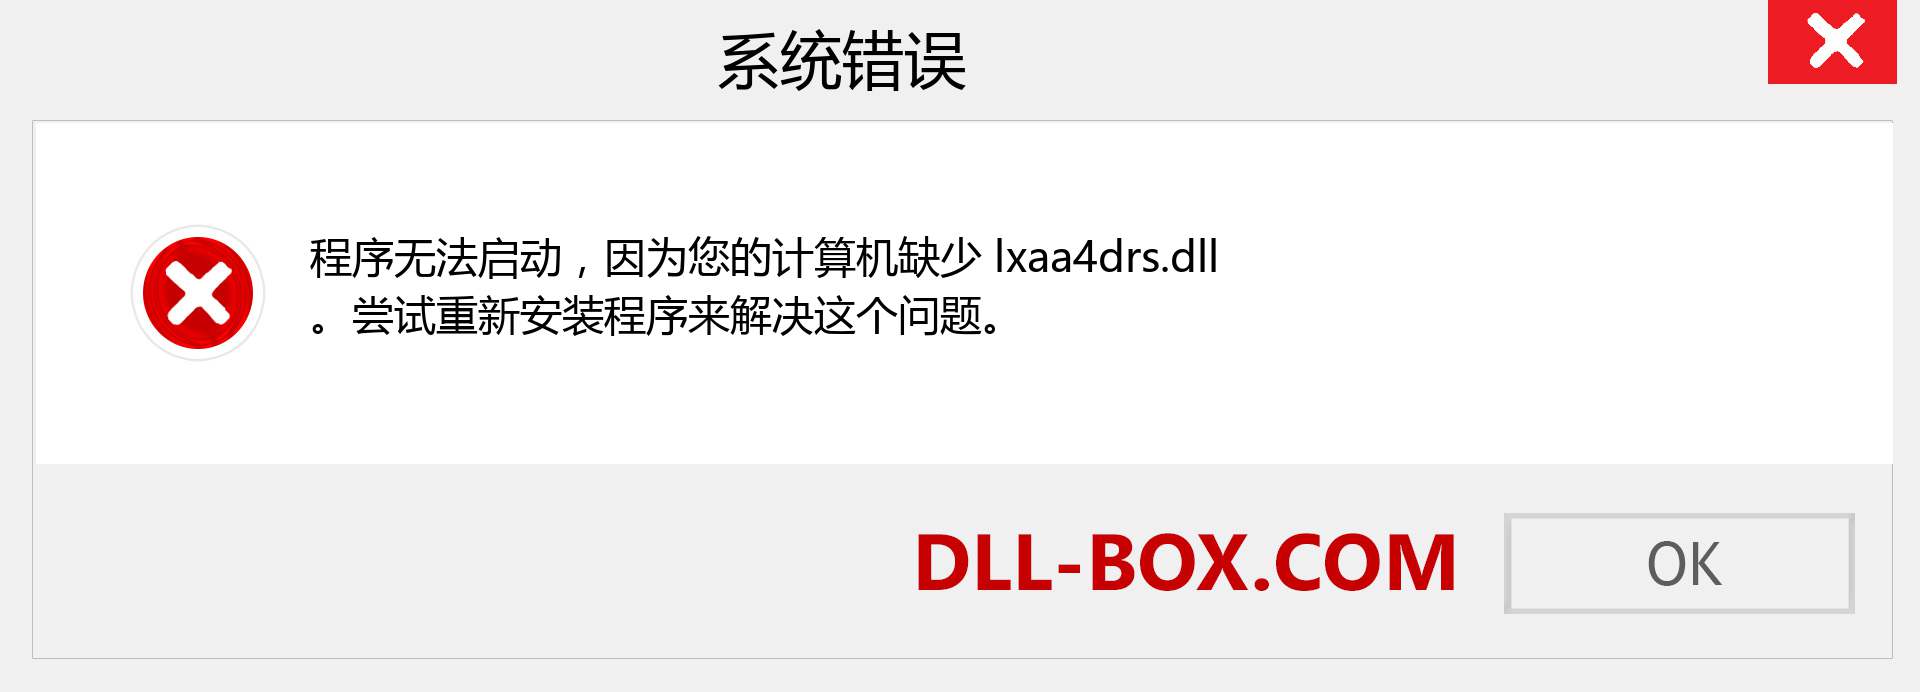 lxaa4drs.dll 文件丢失？。 适用于 Windows 7、8、10 的下载 - 修复 Windows、照片、图像上的 lxaa4drs dll 丢失错误